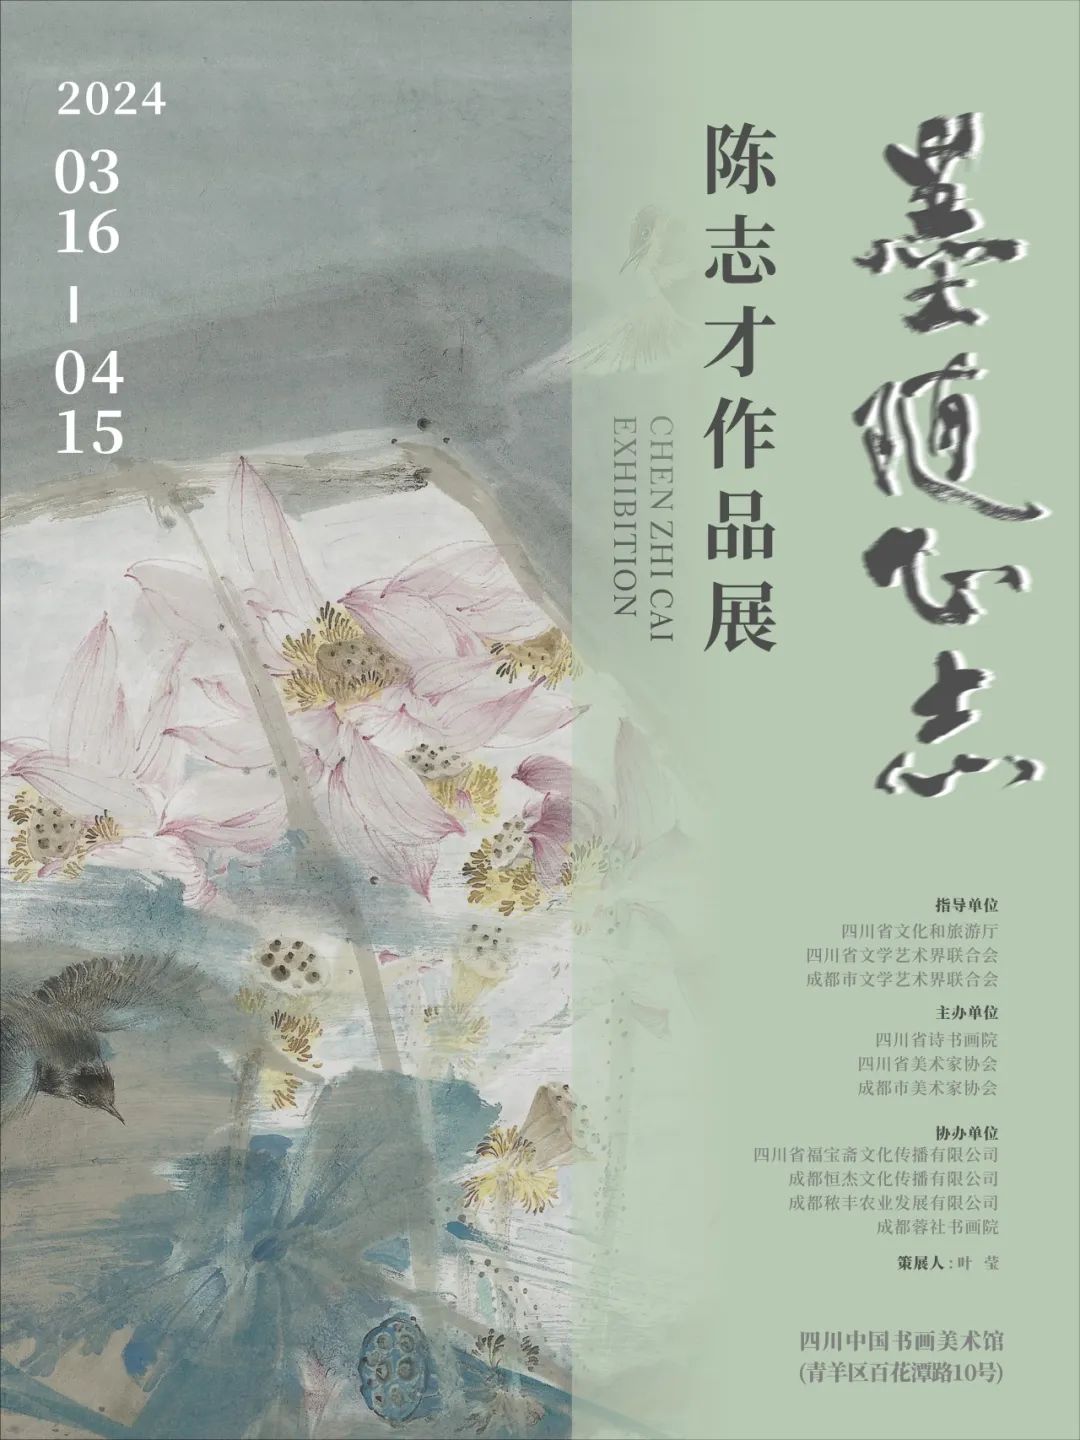 “墨随心志——陈志才作品展”将于3月16日开幕